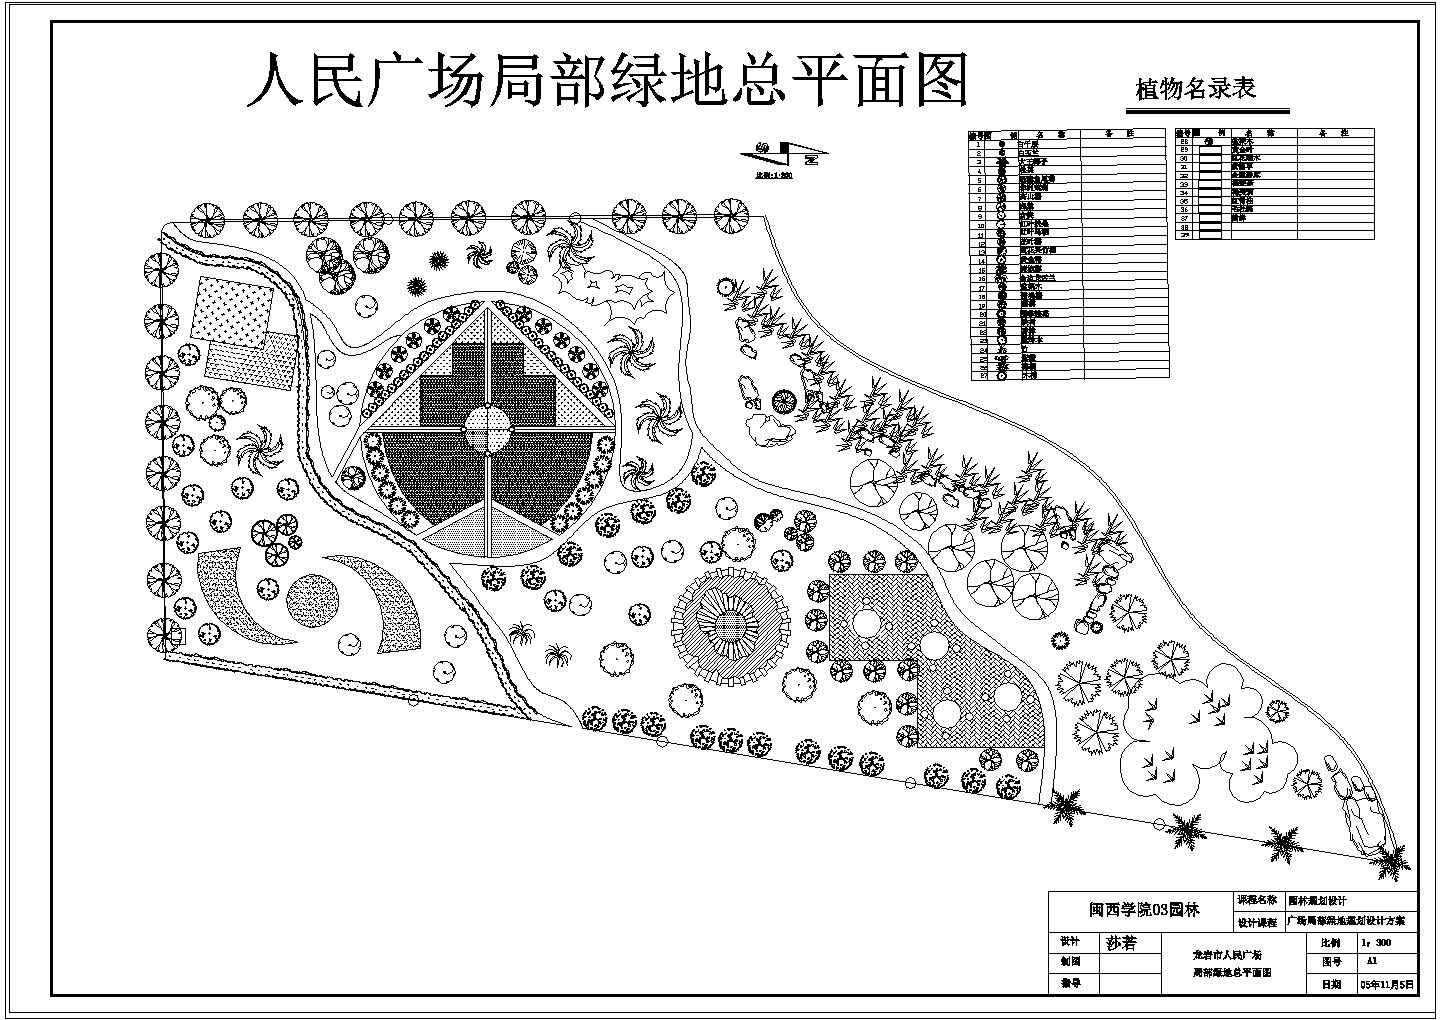 公园广场绿化CAD图纸-人民广场局部绿地总平面图